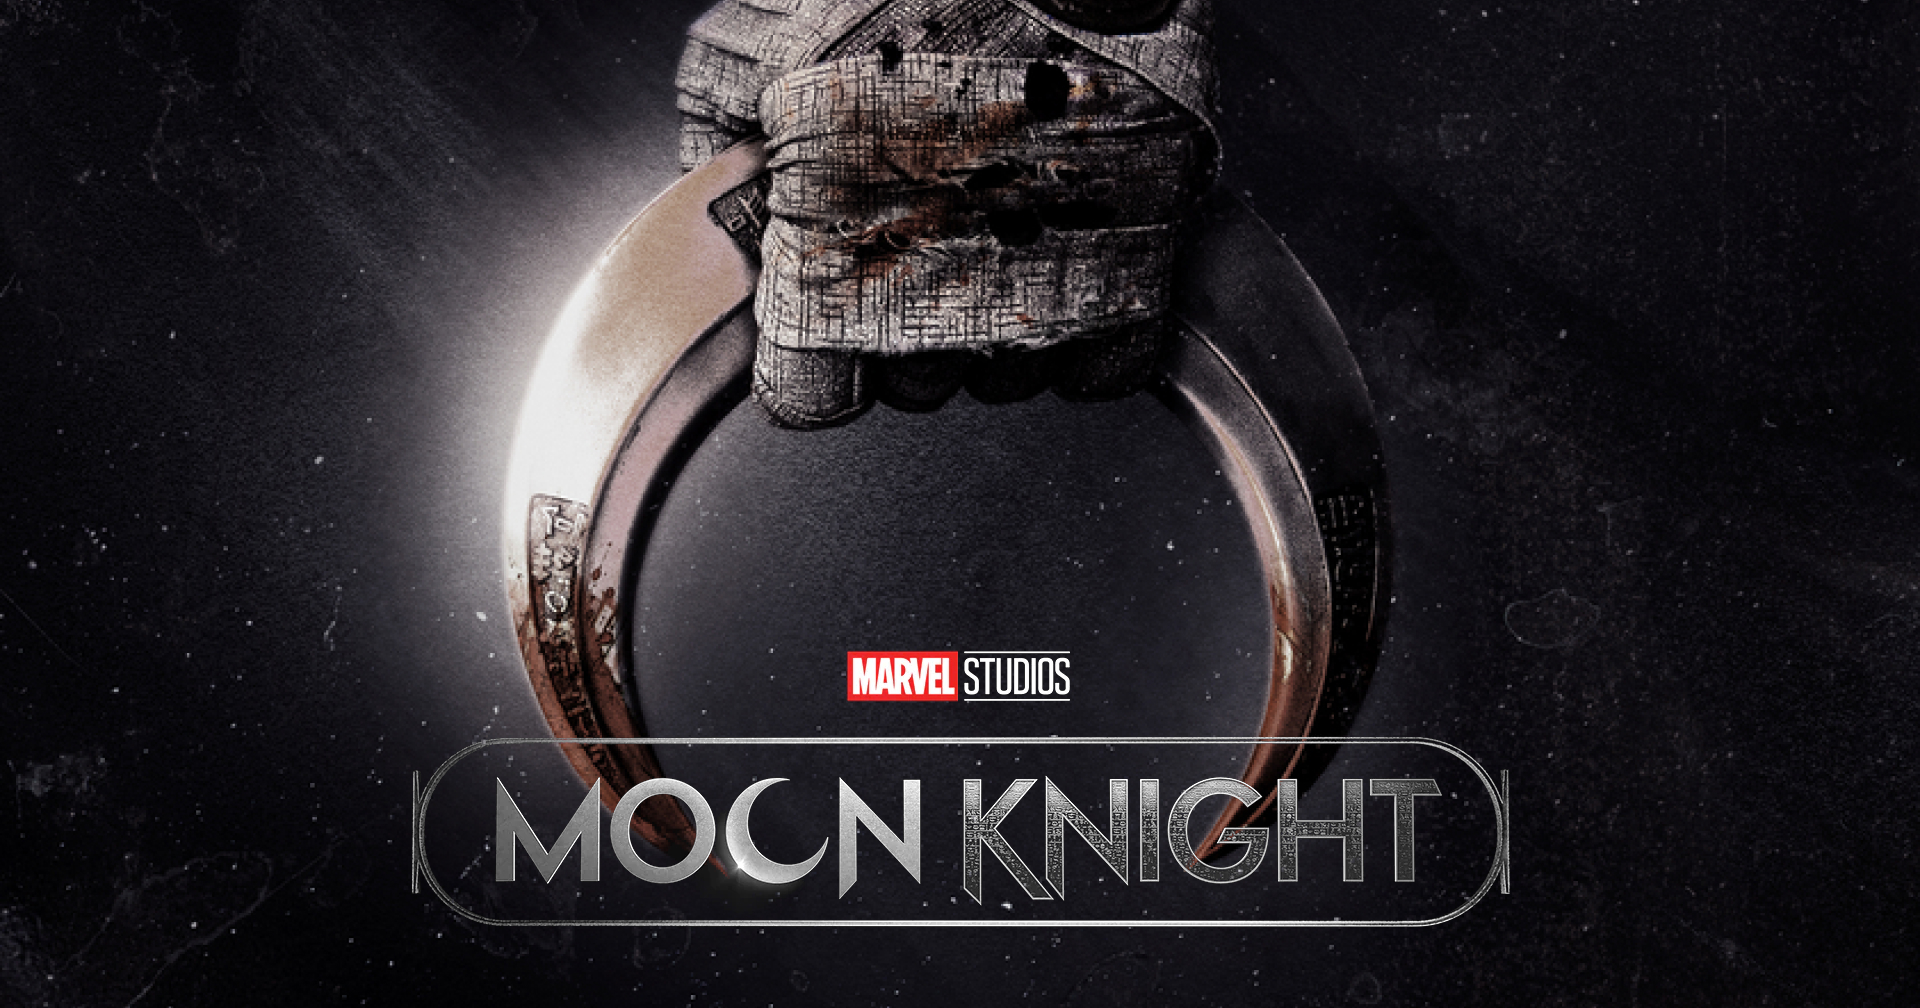 มาแล้ว!! ตัวอย่างทางการ Marvel Studios’ Moon Knight พากย์ไทย เริ่มสตรีม 30 มี.ค. นี้